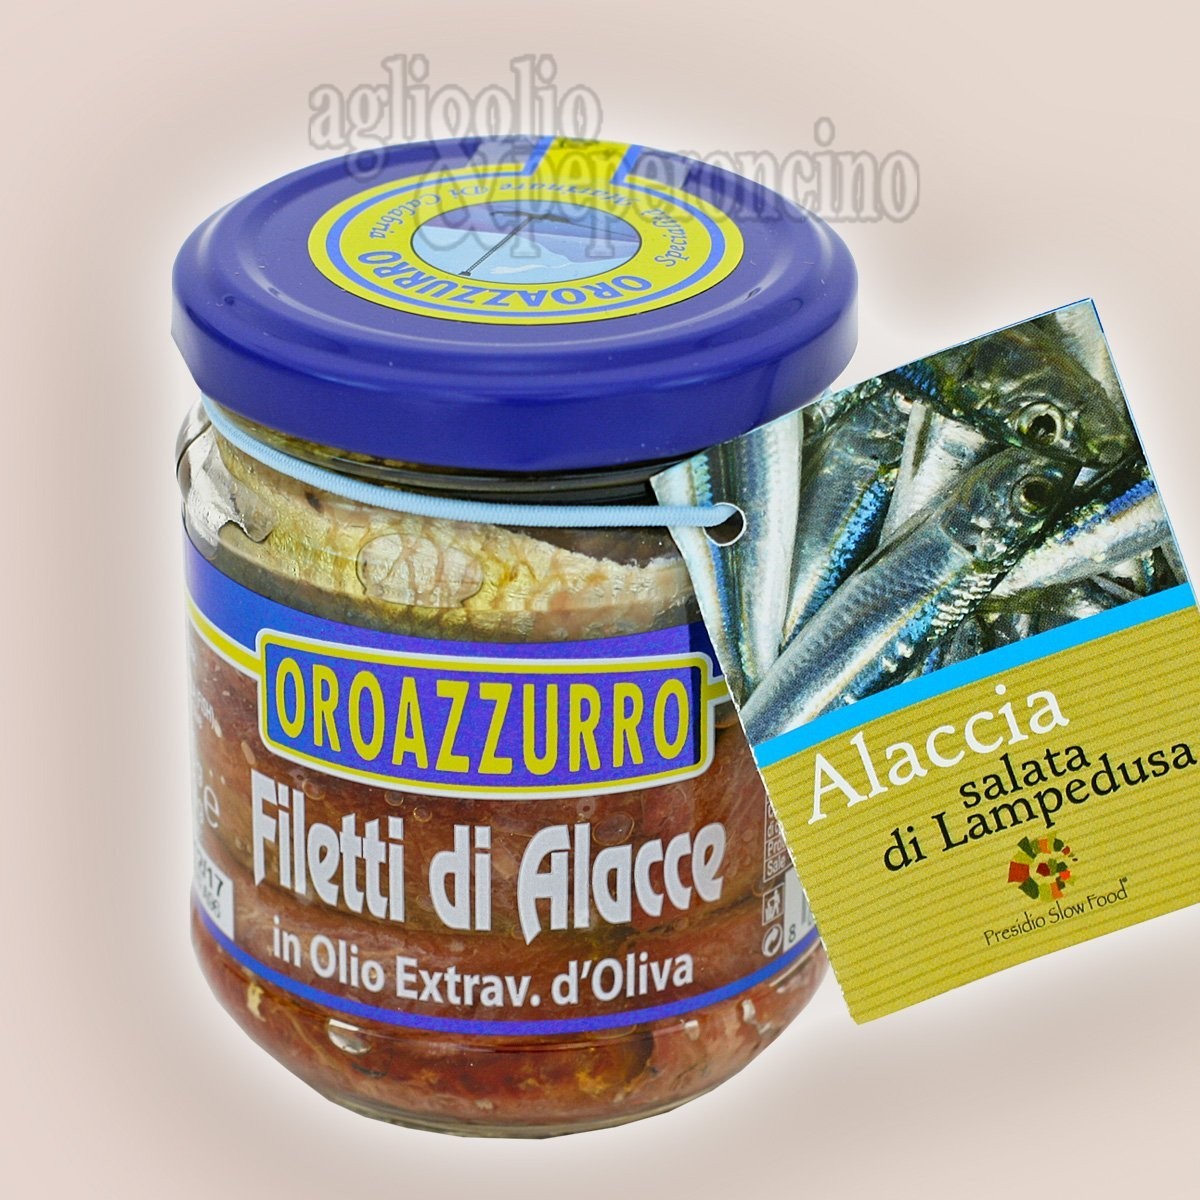 Filetti di Alacce in olio extravergine d'oliva - Specialità calabrese a base di alacce salate di Lampedusa -  Presidio Slow Food